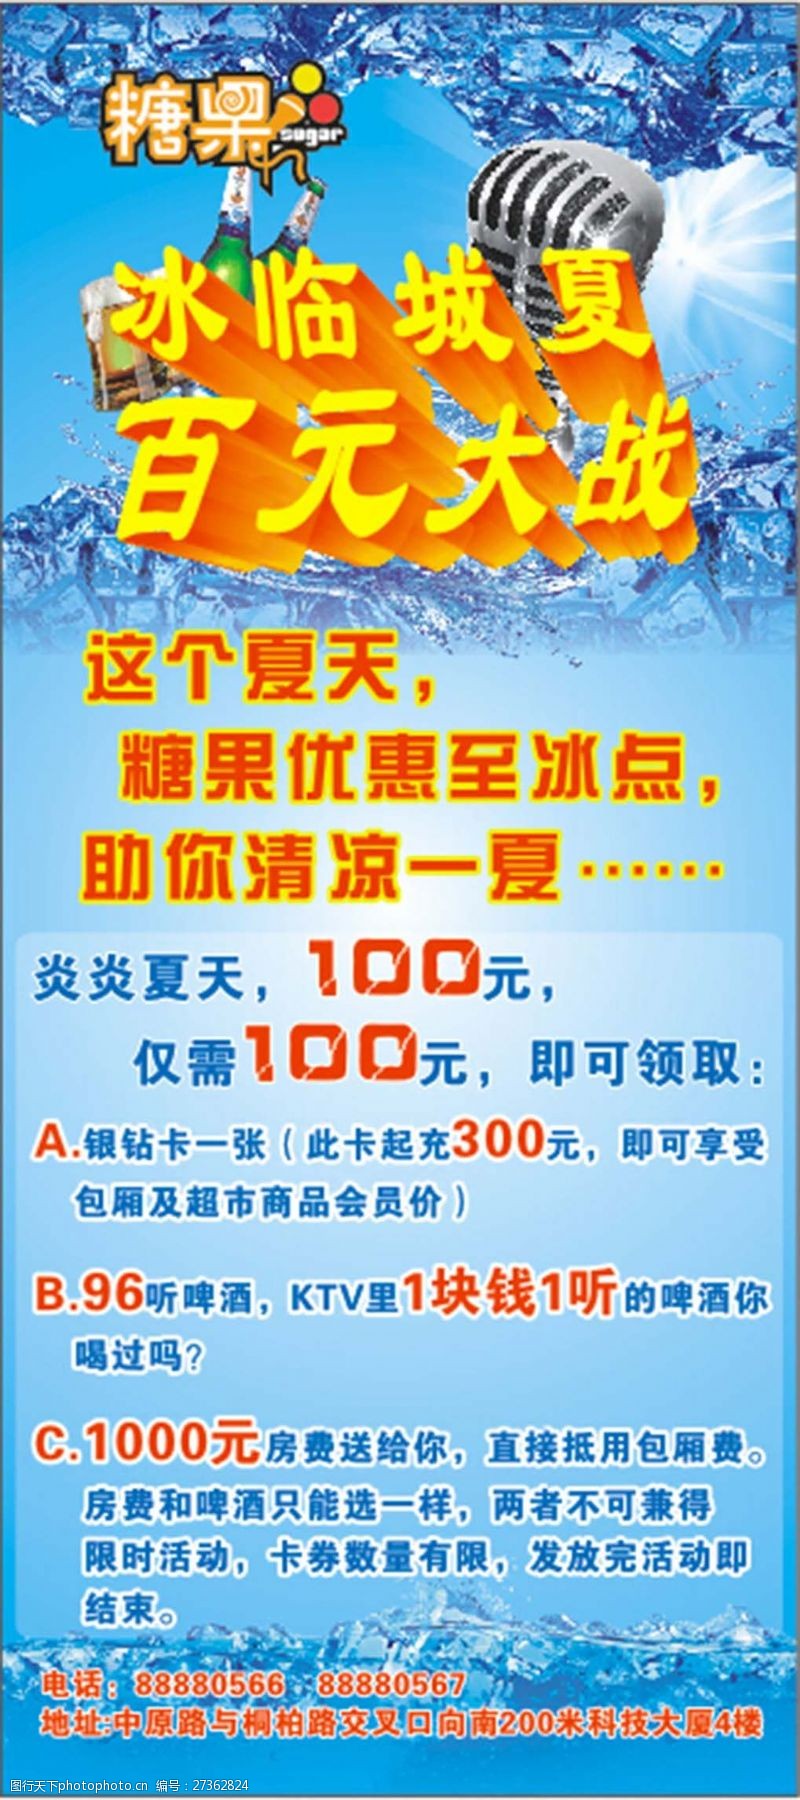 大惠战KTV夏季优惠活动海报